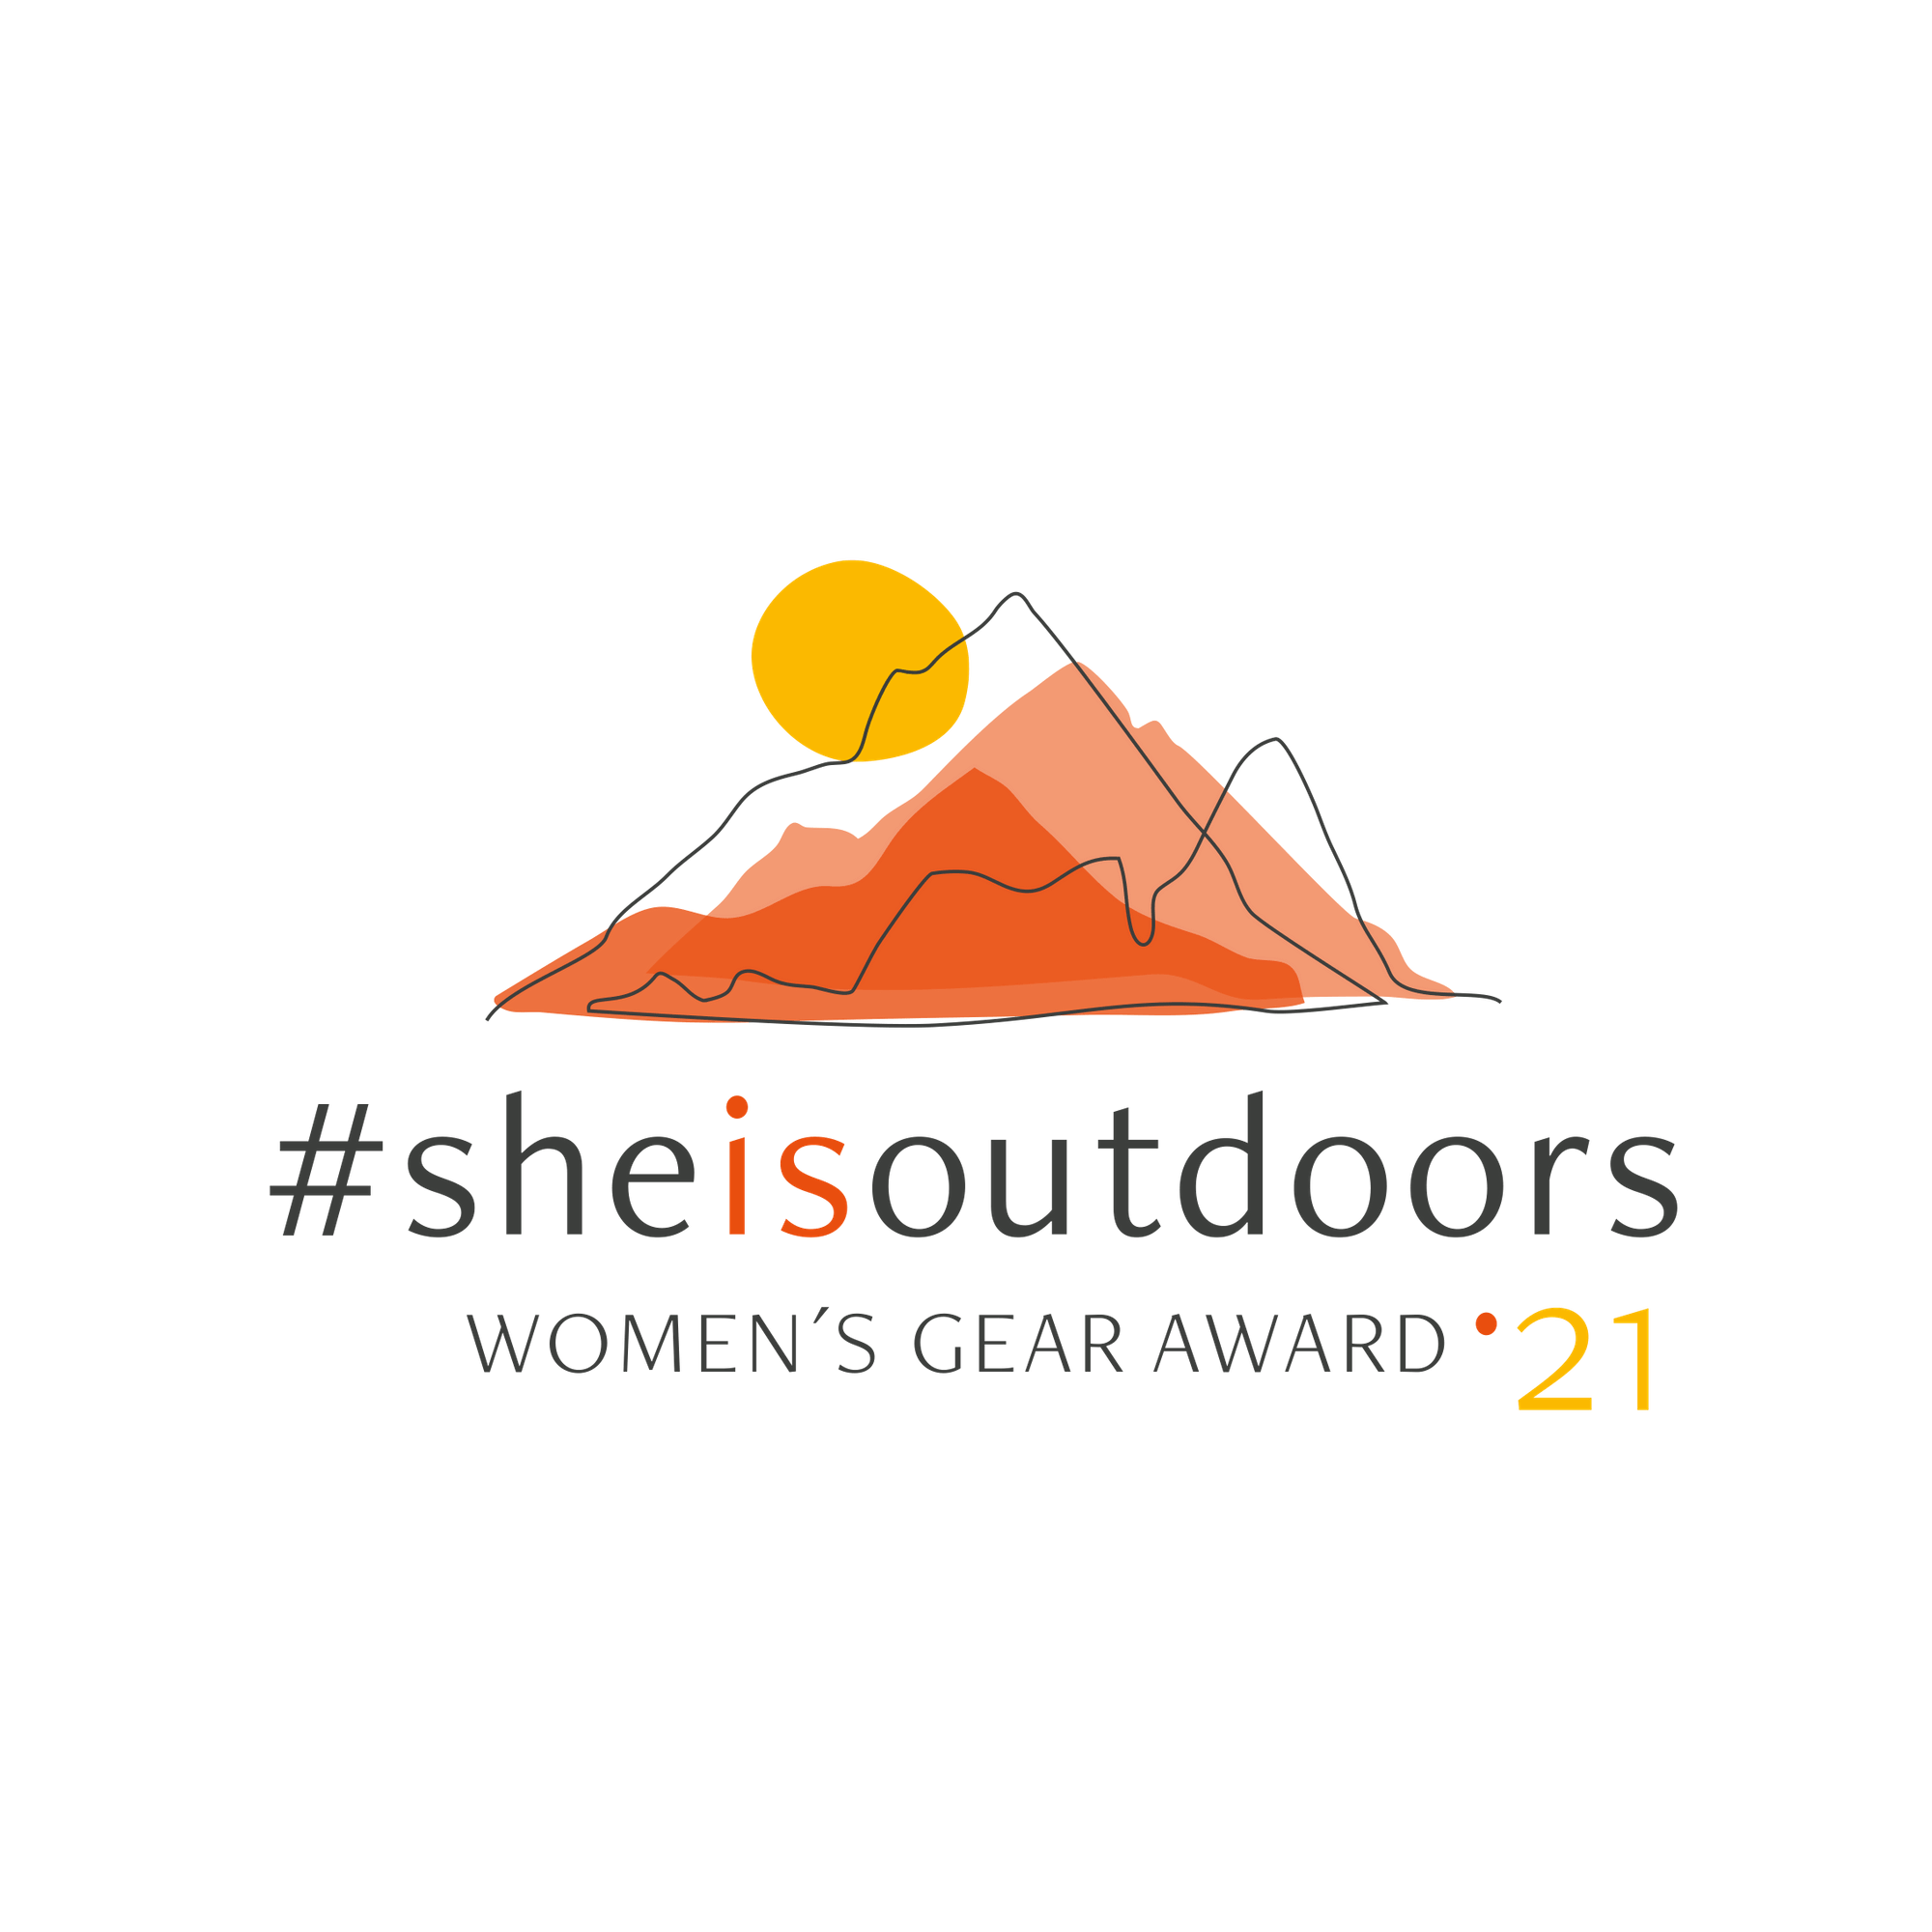 Wir sind Teil des #sheisoutdoors Women's Gear Award. ☀